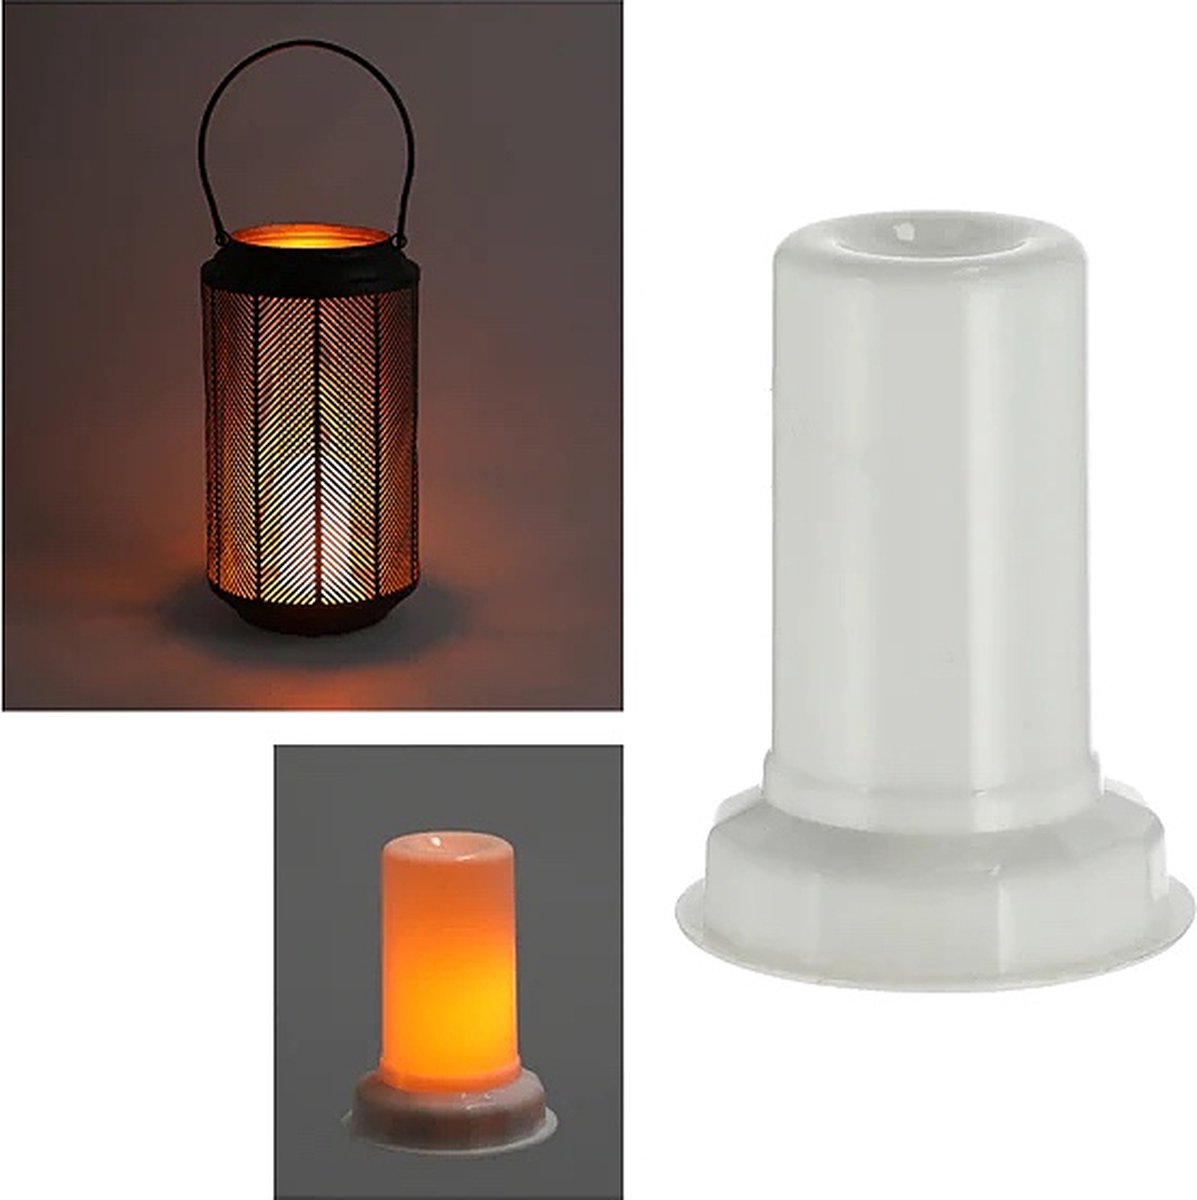 vlamlicht LED-kaars voor lantaarns 9x7,5 cm - Vlam lamp met timer - ca. 9x7,5cm - 3x AAA batterijen (niet inbegrepen) - ideaal voor het verlichten van lantaarns en lantaarns